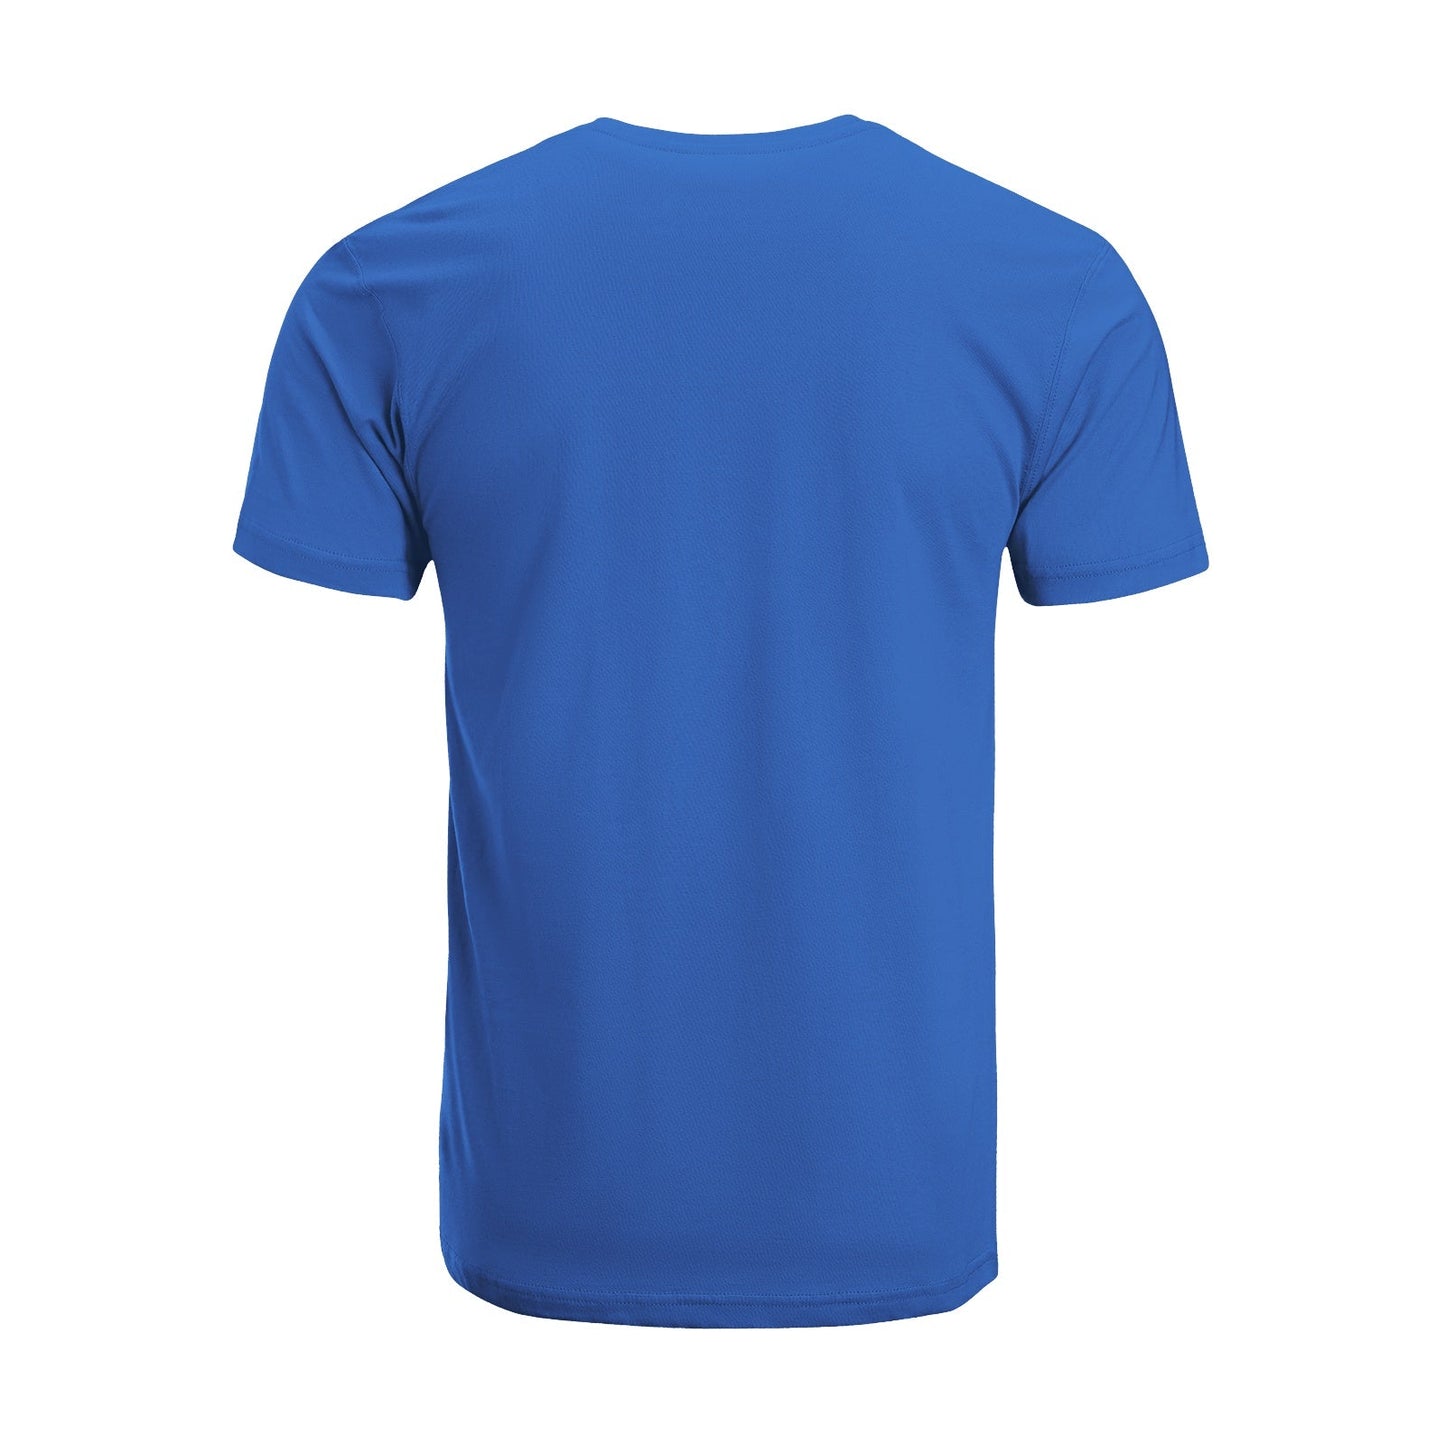 Unisex Short Sleeve Crew Neck Cotton Jersey T-Shirt TRUCK 25